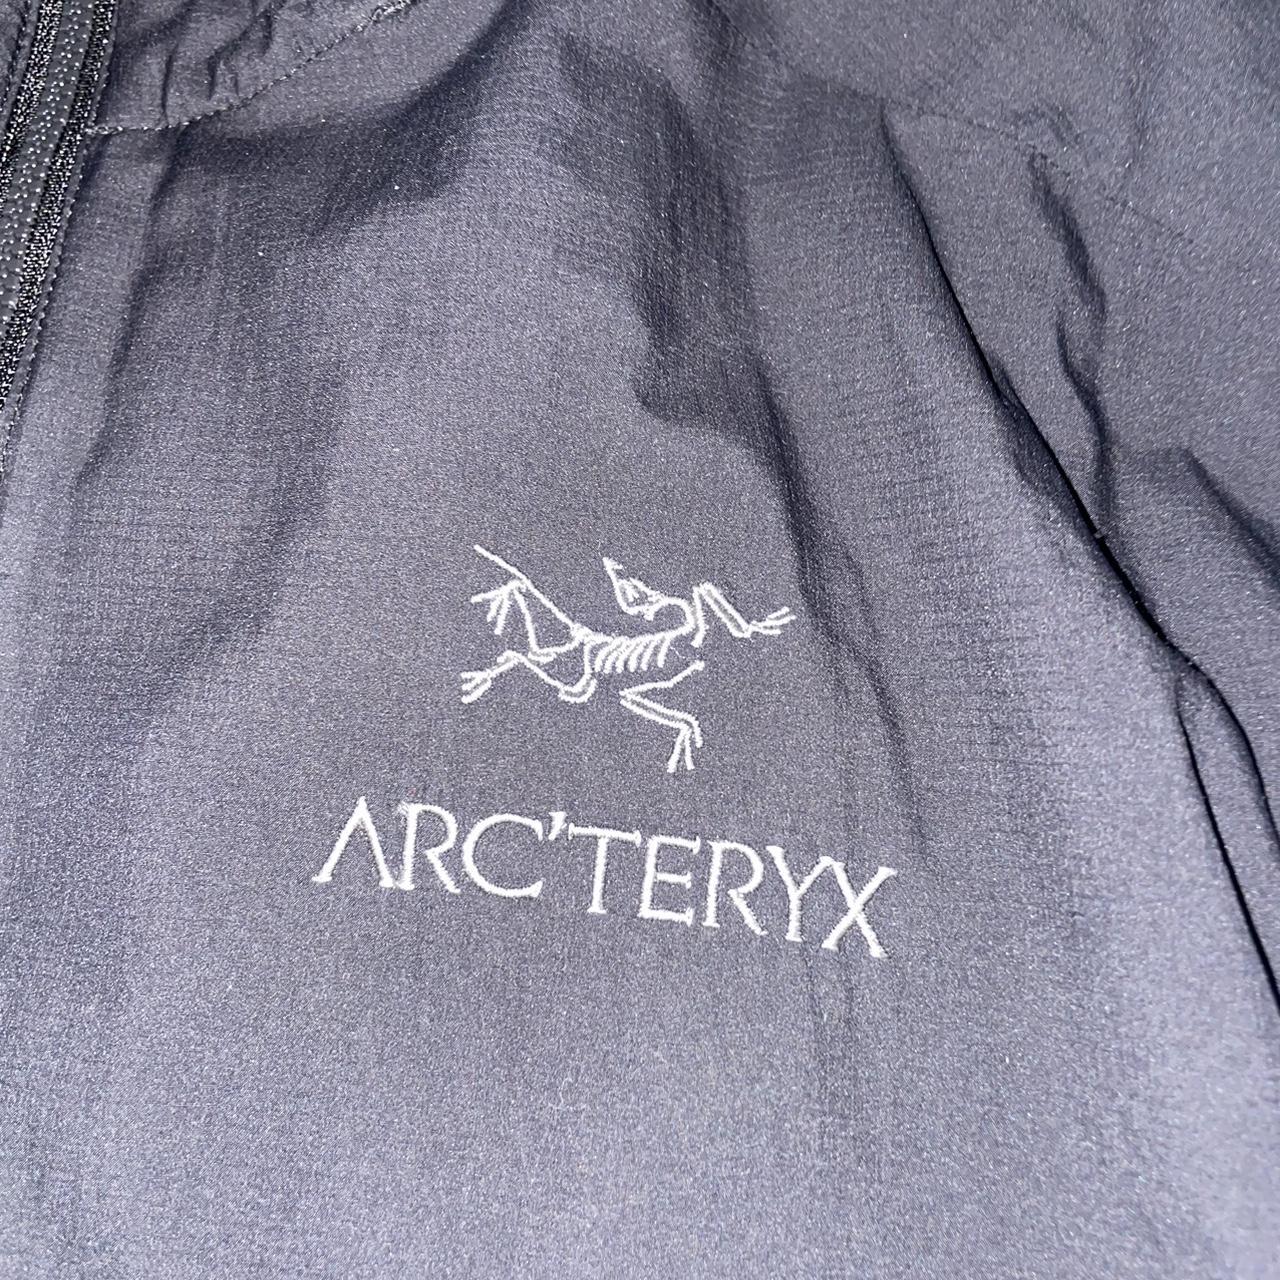 Arcteryx Black Jacket 🍒🍒EXPOSURE POST🍒🍒 DO NOT... - Depop